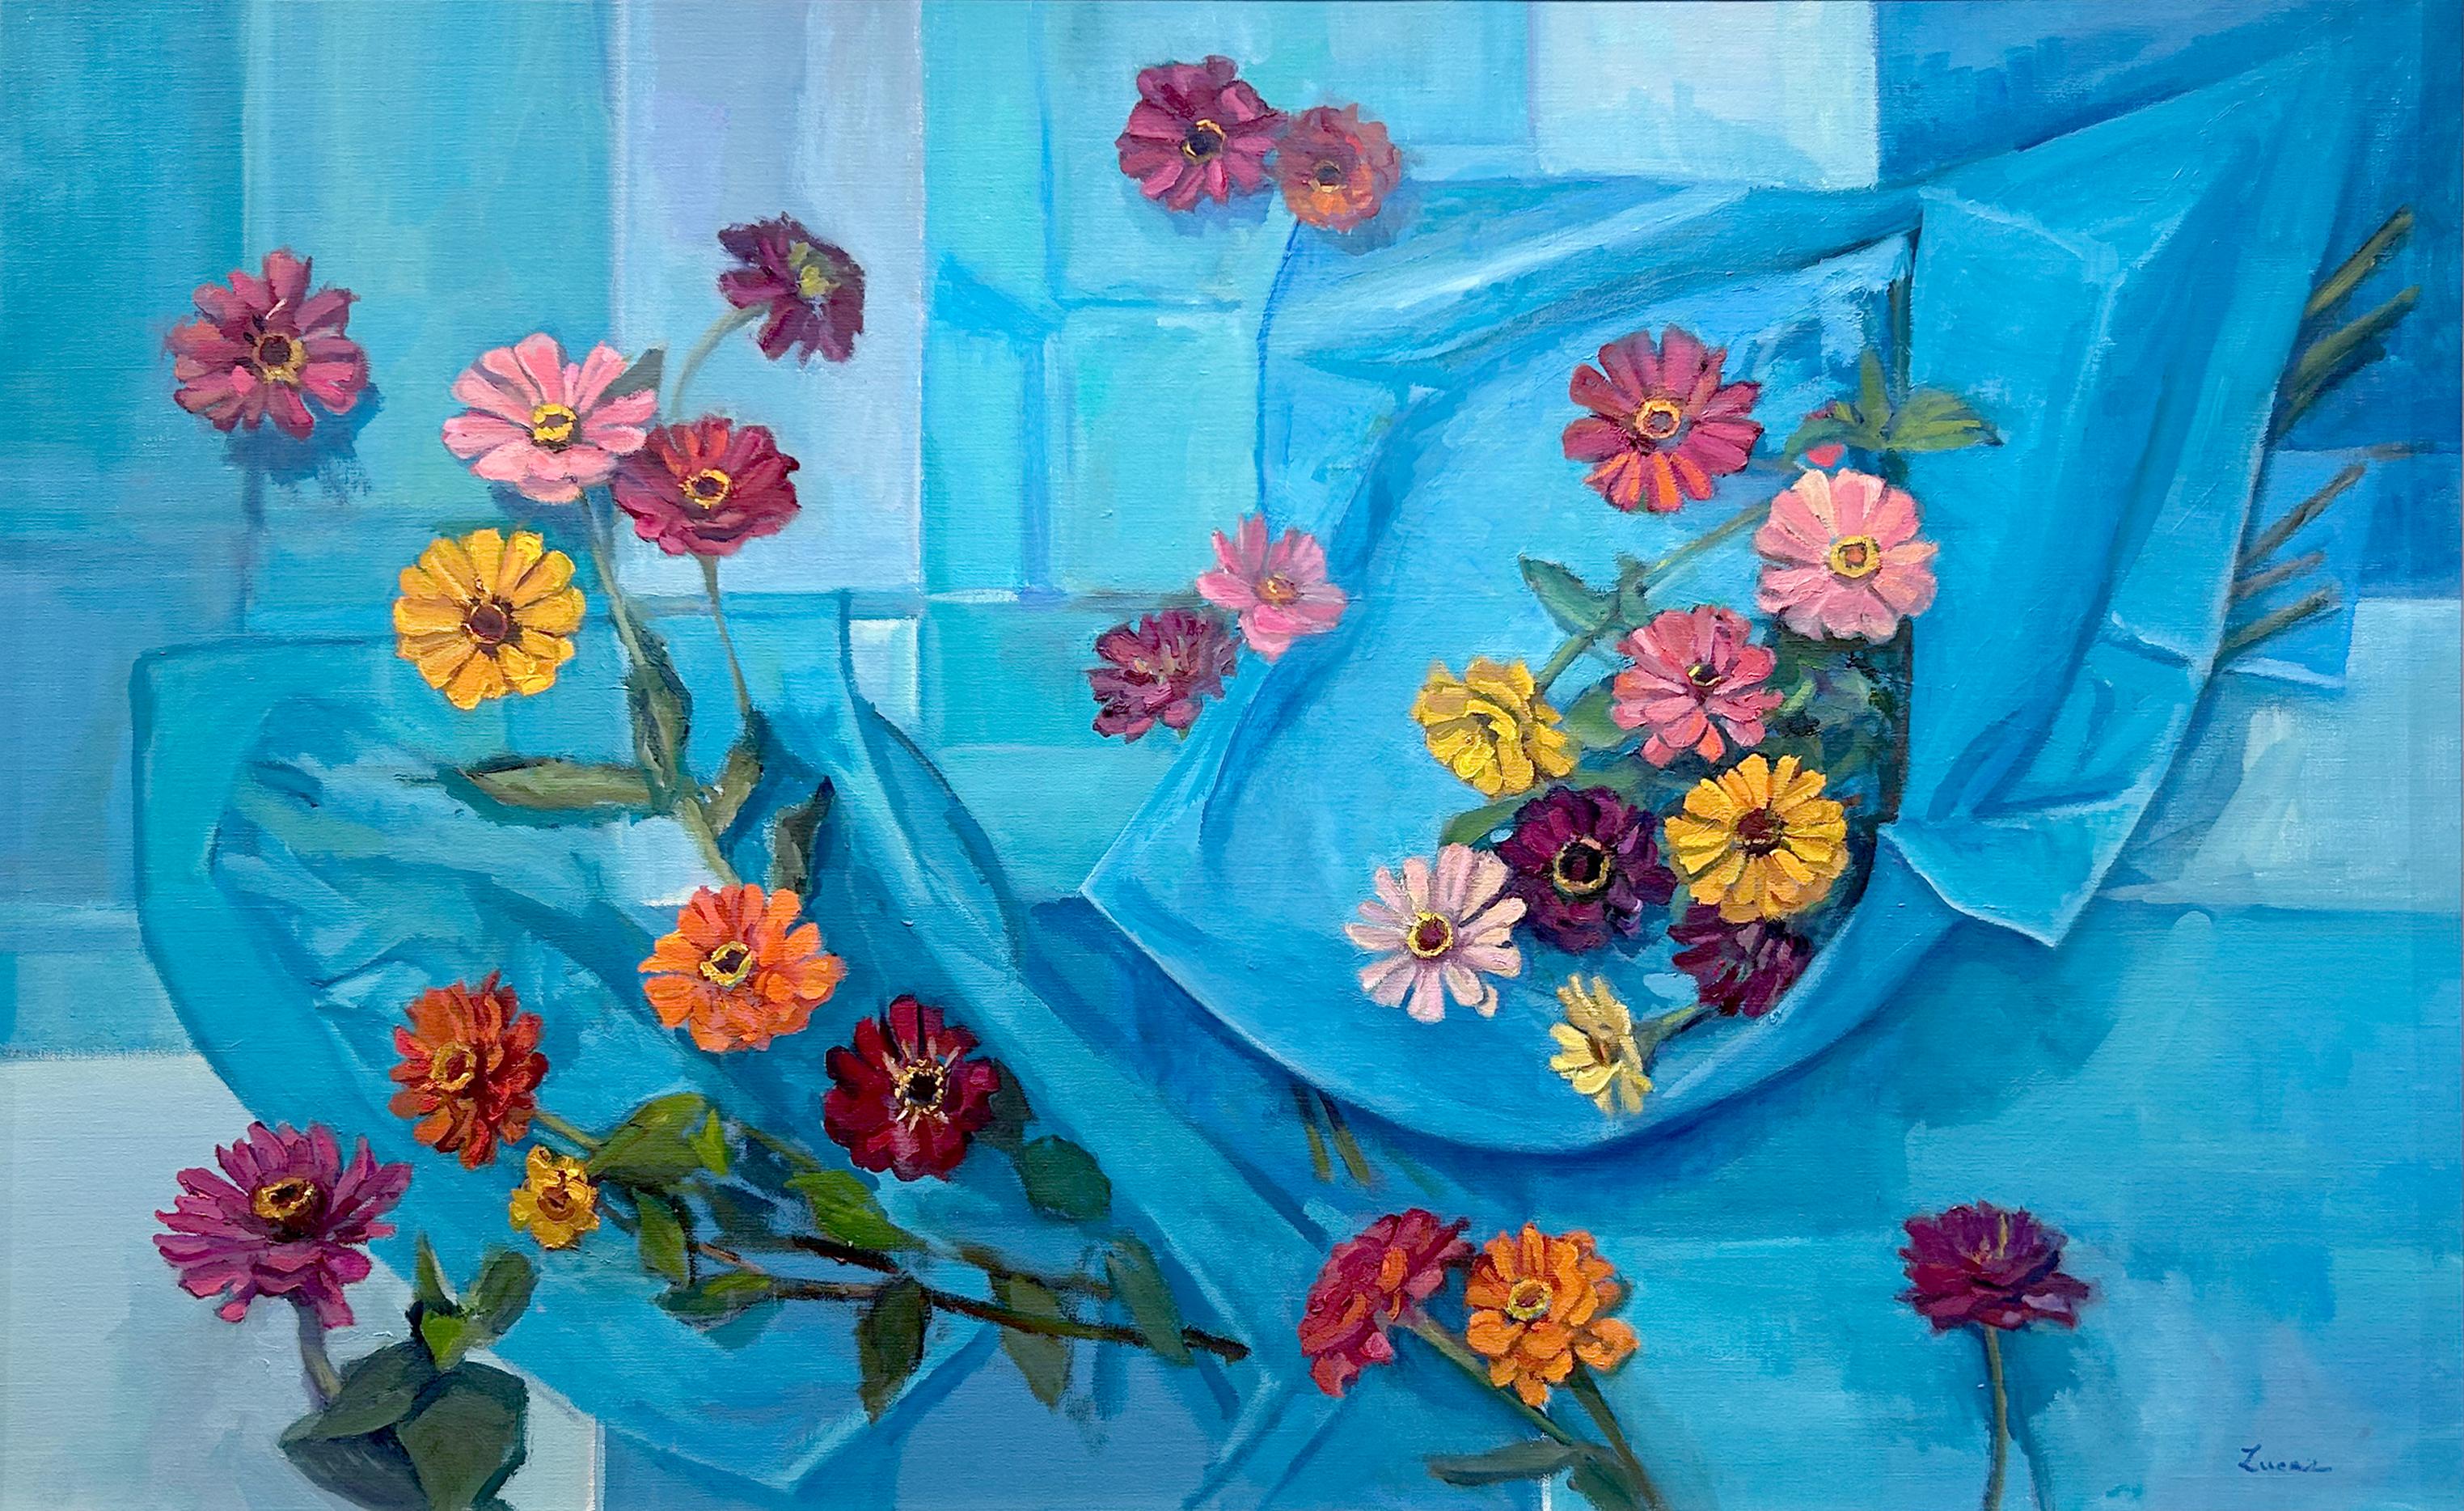 Cette peinture florale lumineuse et colorée, "Out of the Blue", est une nature morte 30x48 peinte à l'huile sur toile par Maryann Lucas.  Il s'agit d'une vue de haut en bas d'un fond bleu recouvert de papier de soie et d'une composition colorée de